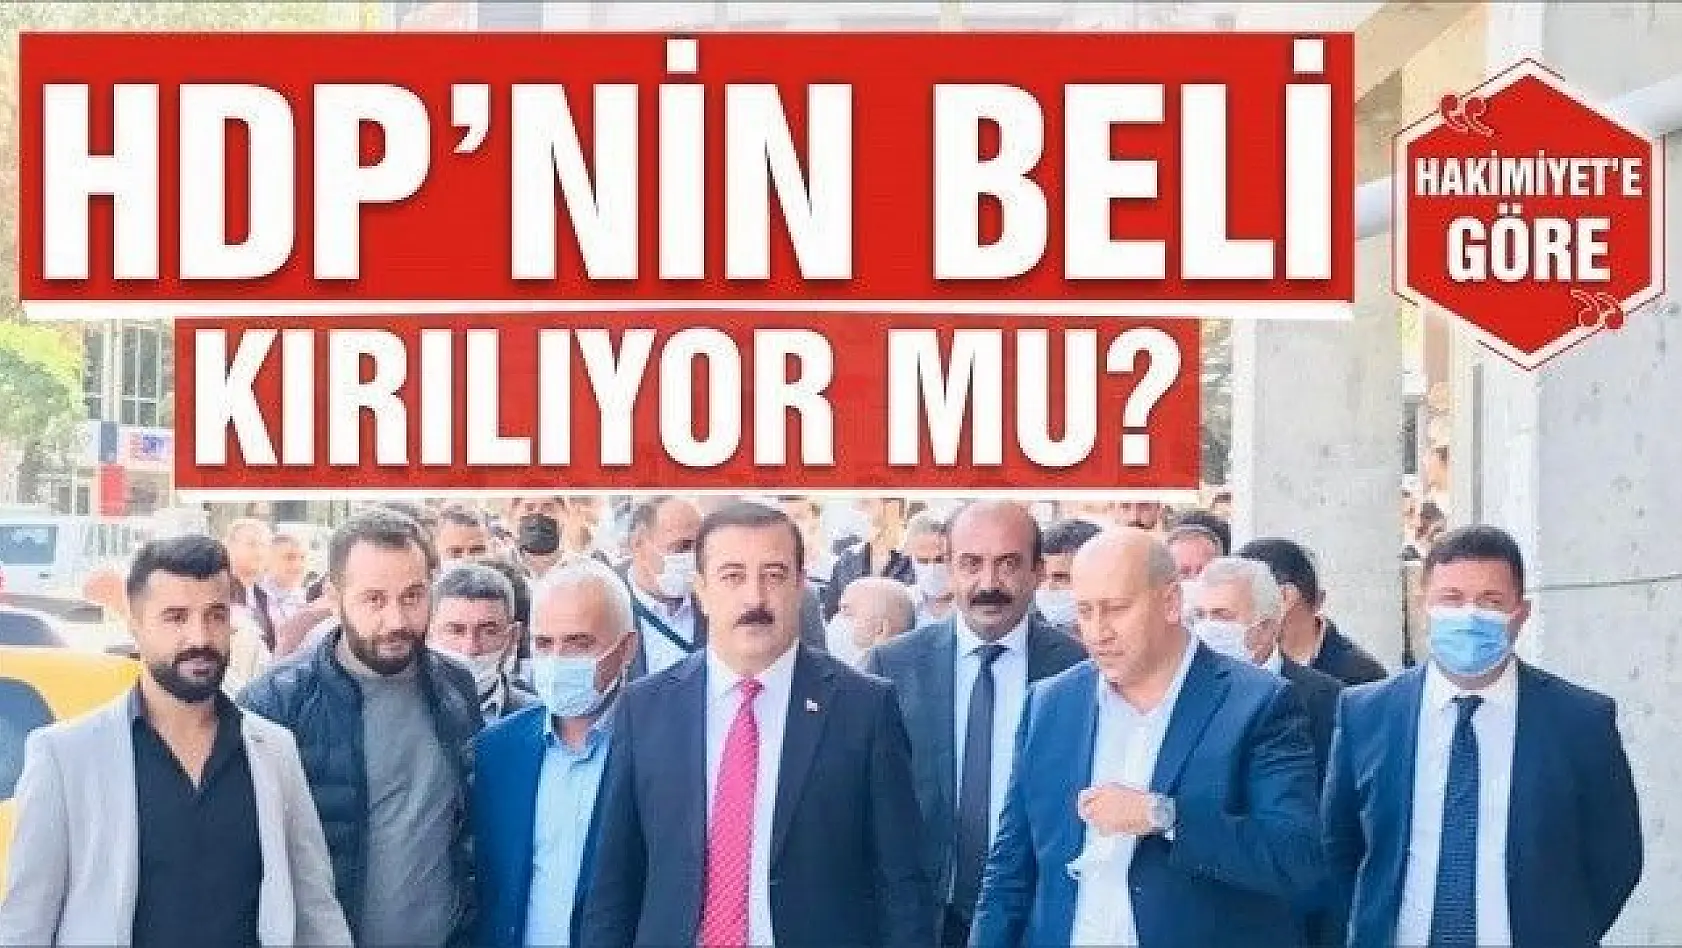 HDP'NİN BELİ KIRILIYOR MU?